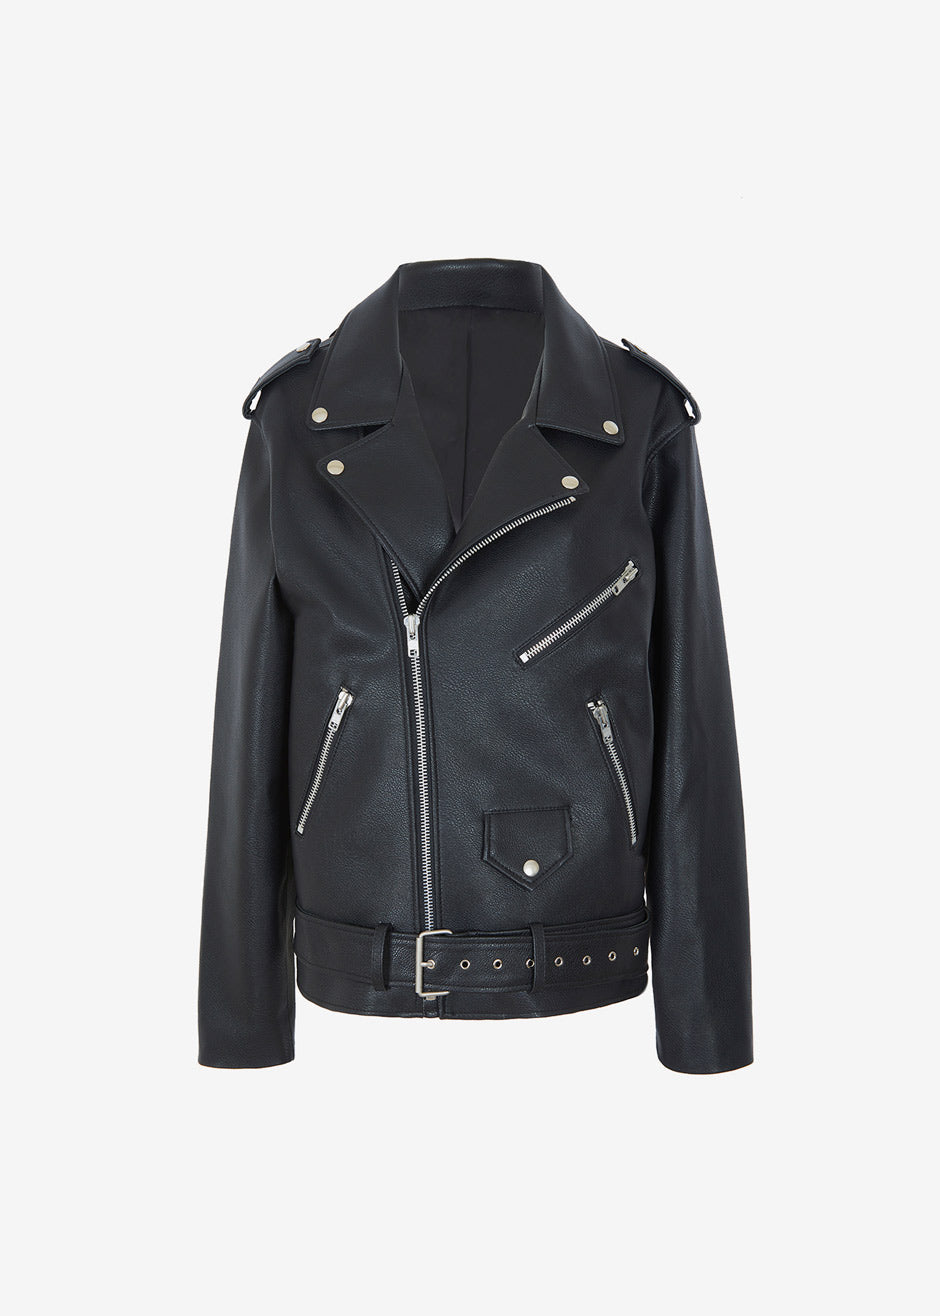 Franki Ray Leather Varsity Jacket Small